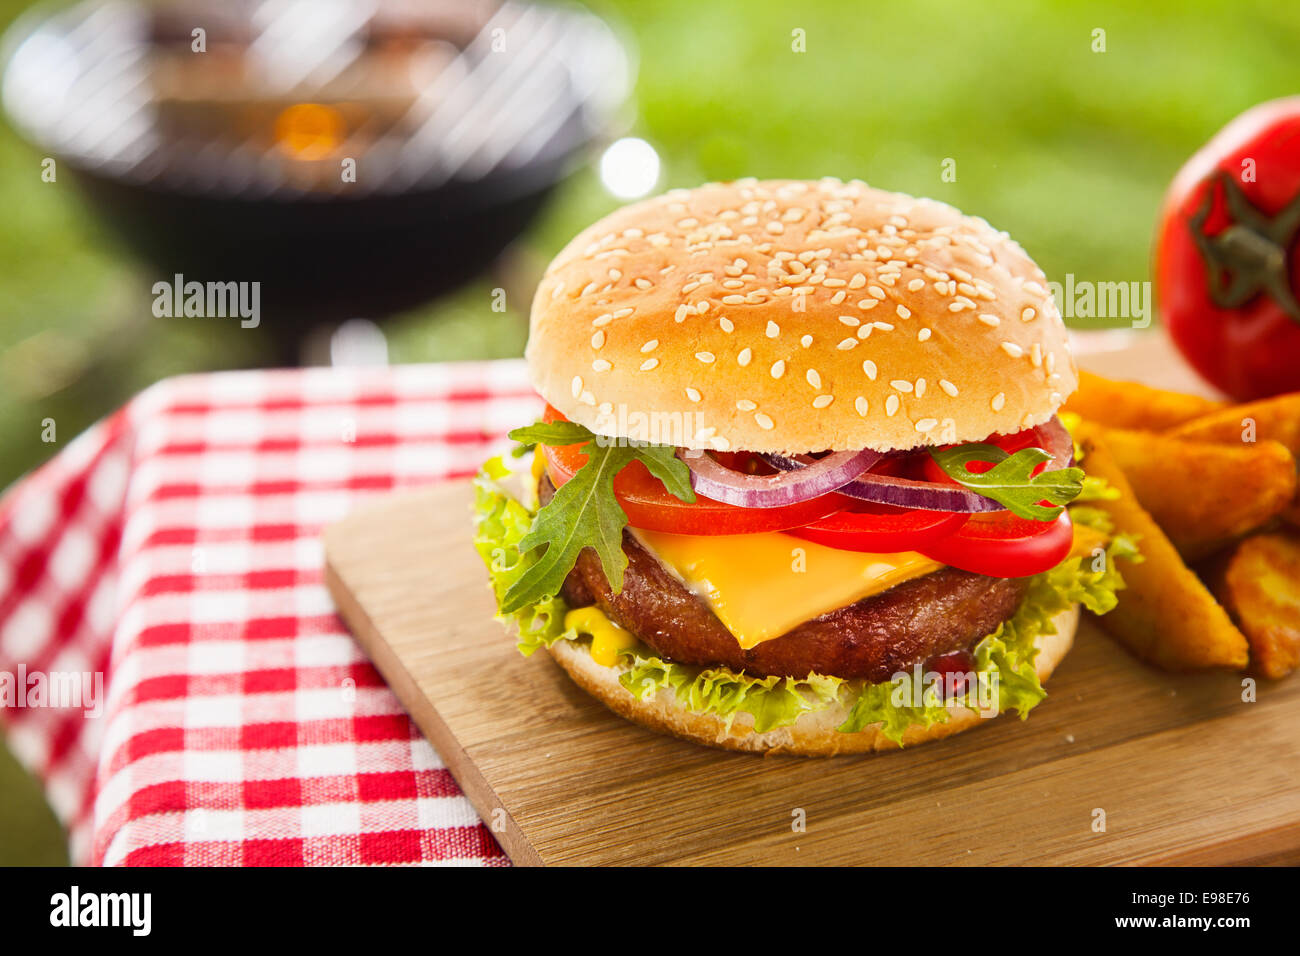 Leckeren Cheeseburger mit geschmolzenem Cheddar-Käse tropft über ground Beef-Burger mit frischem Salatzutaten garniert und serviert auf einem Holztisch auf ein Picknick im freien Tisch Stockfoto